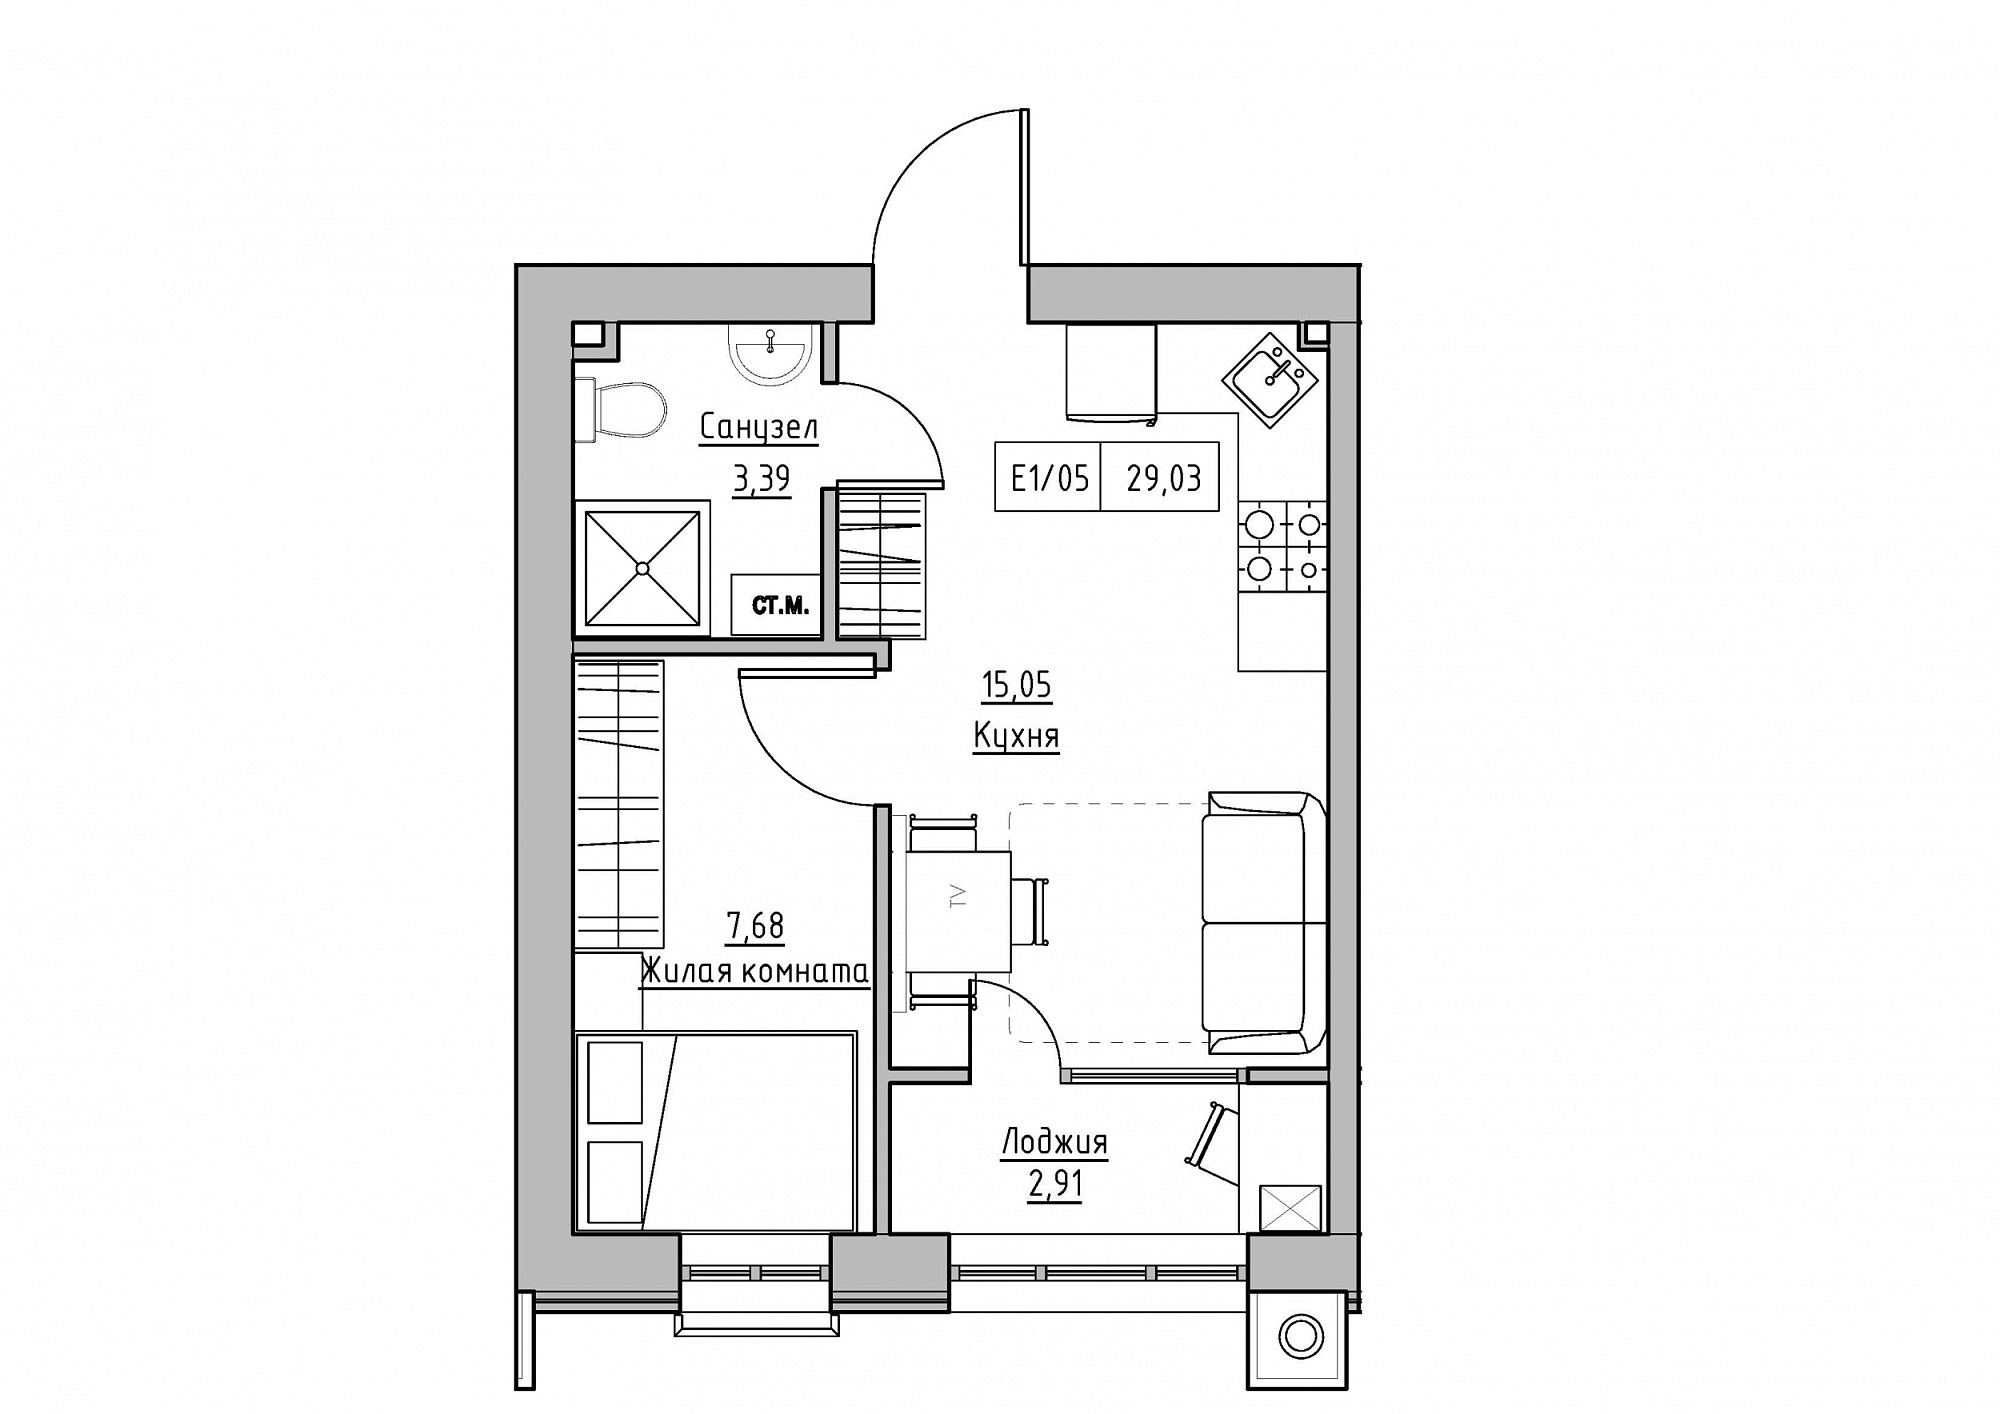 Планування 1-к квартира площею 29.03м2, KS-012-01/0007.